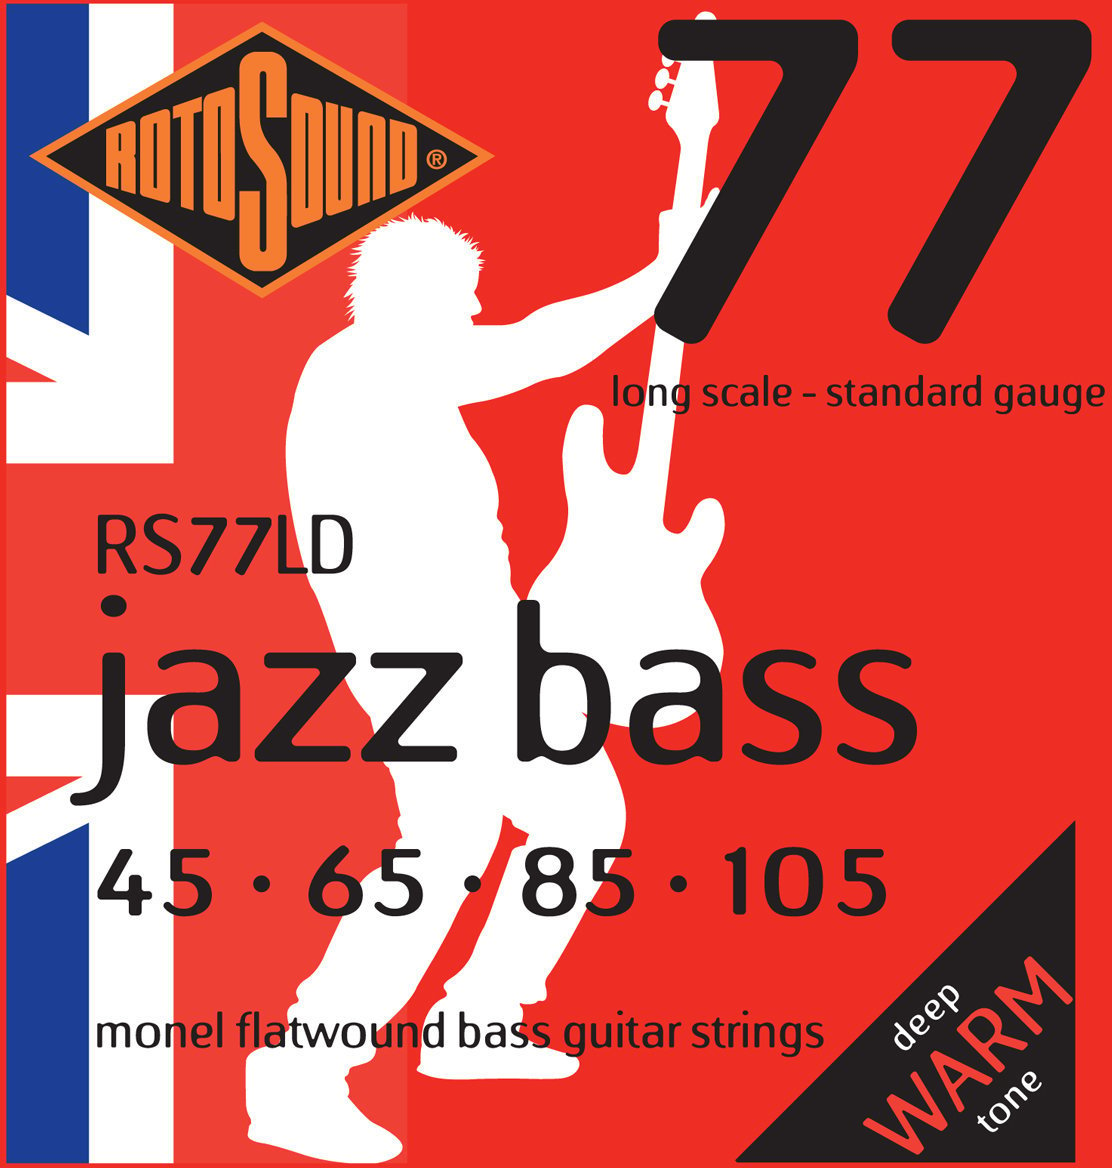 Struny pro baskytaru Rotosound RS 77 LD